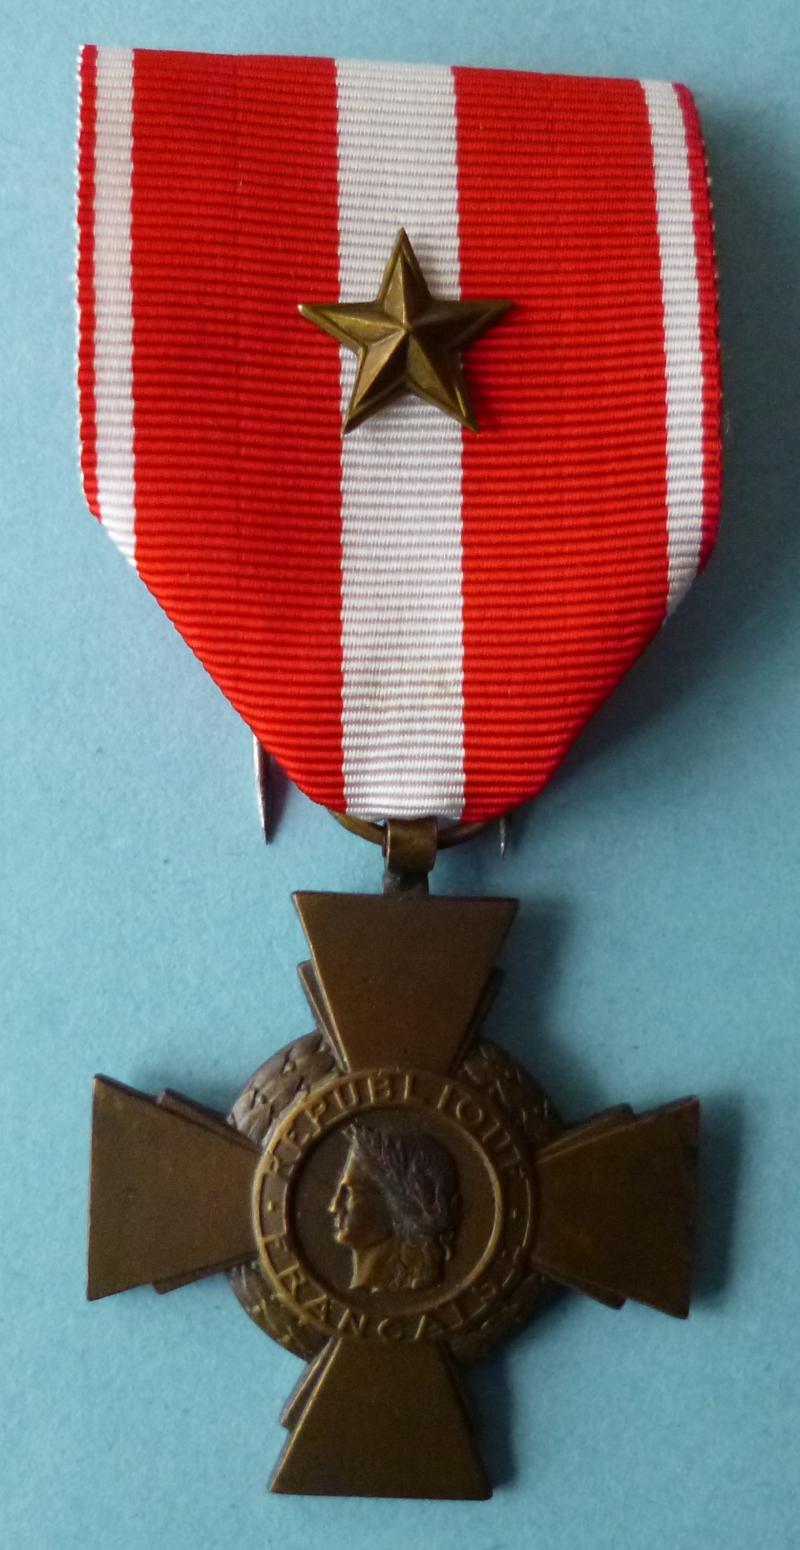 France : Cross of Military Valour (Croix de la Valeur Militaire).